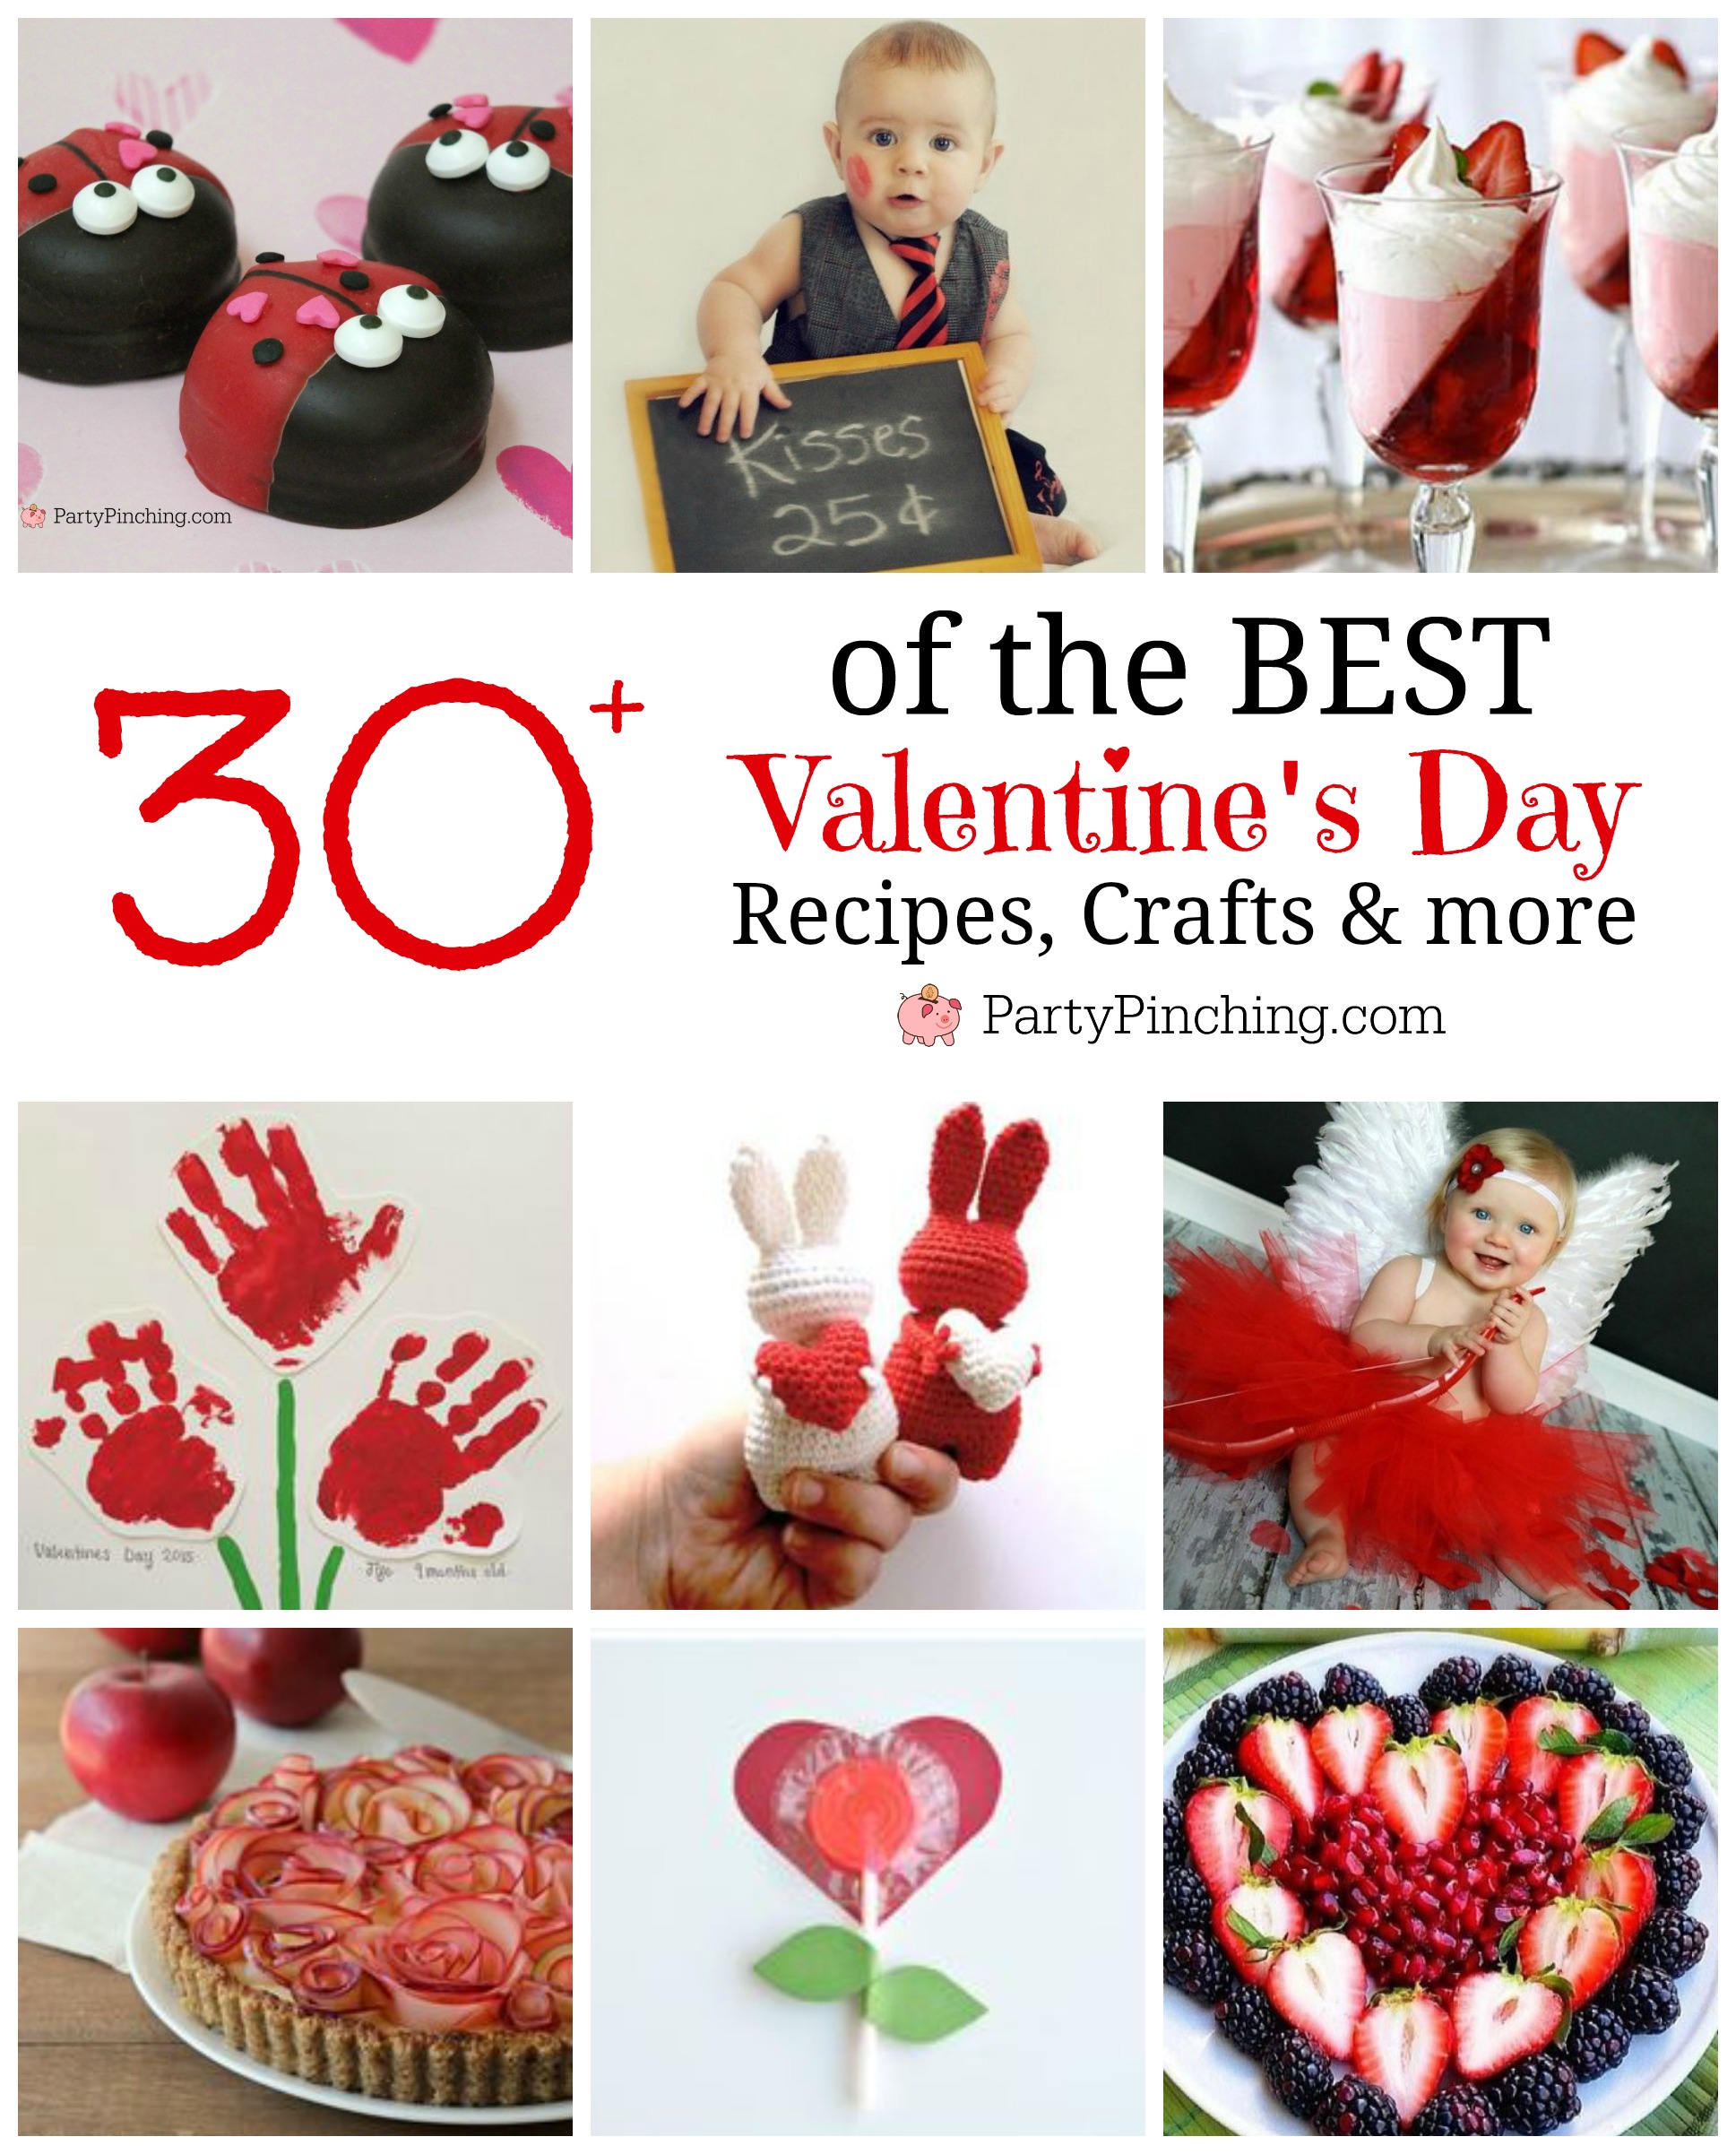 Valentines Day 2020, Valentine's Day Roundup, Best Valentine's Day ideas, valentine's day crafts, recipes for kids